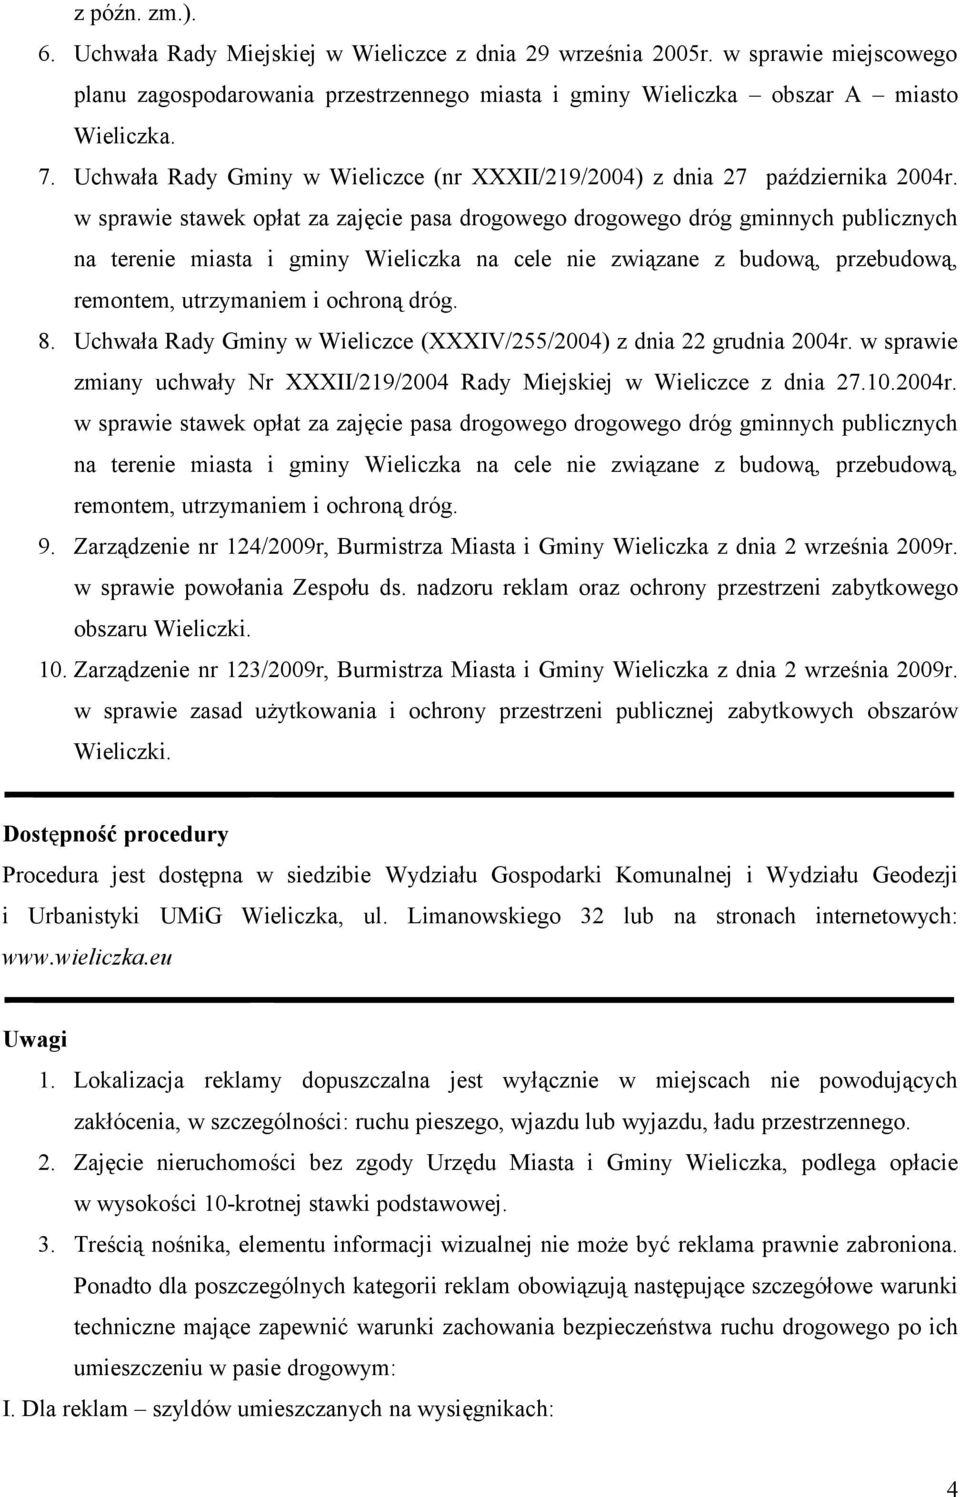 w sprawie zmiany uchwały Nr XXXII/219/2004 Rady Miejskiej w Wieliczce z dnia 27.10.2004r. 9. Zarządzenie nr 124/2009r, Burmistrza Miasta i Gminy Wieliczka z dnia 2 września 2009r.